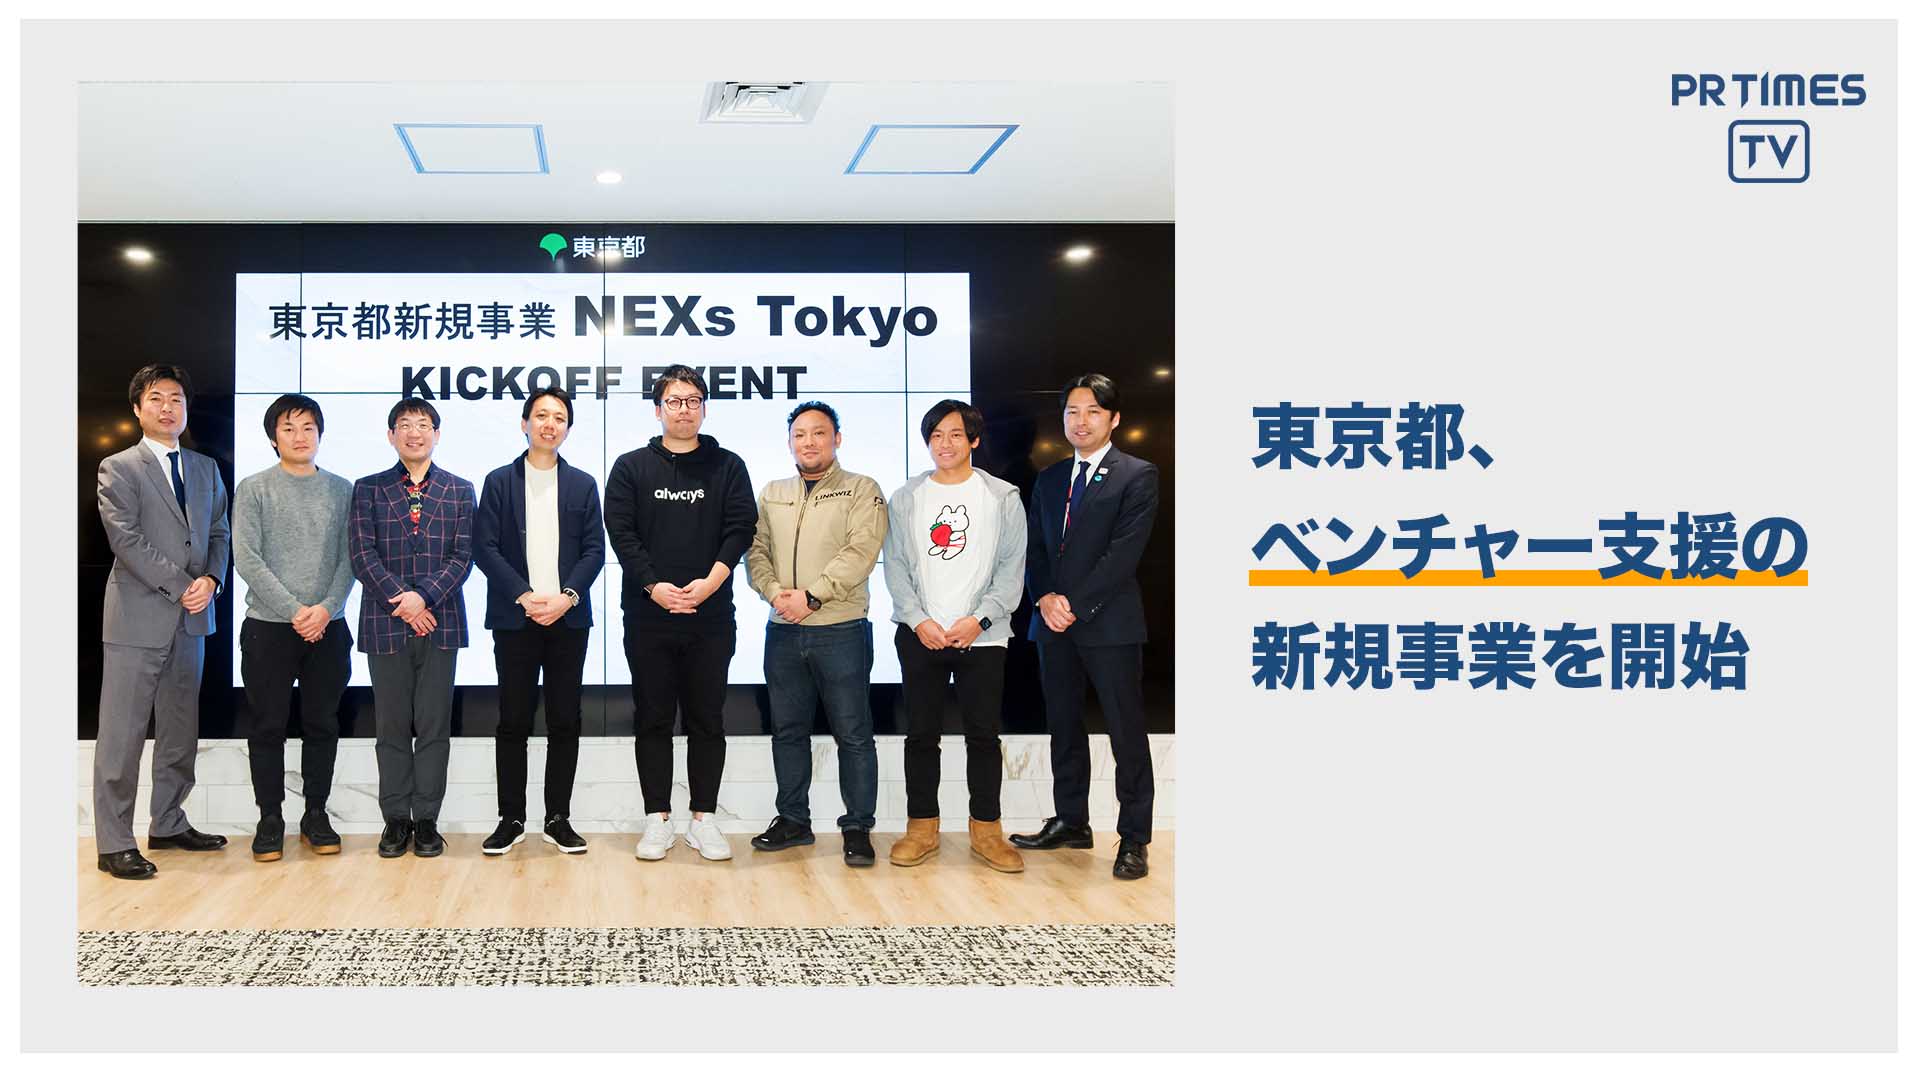 ベンチャー企業の成長を支援する『NEXs Tokyo』プロジェクトのキックオフイベントを開催